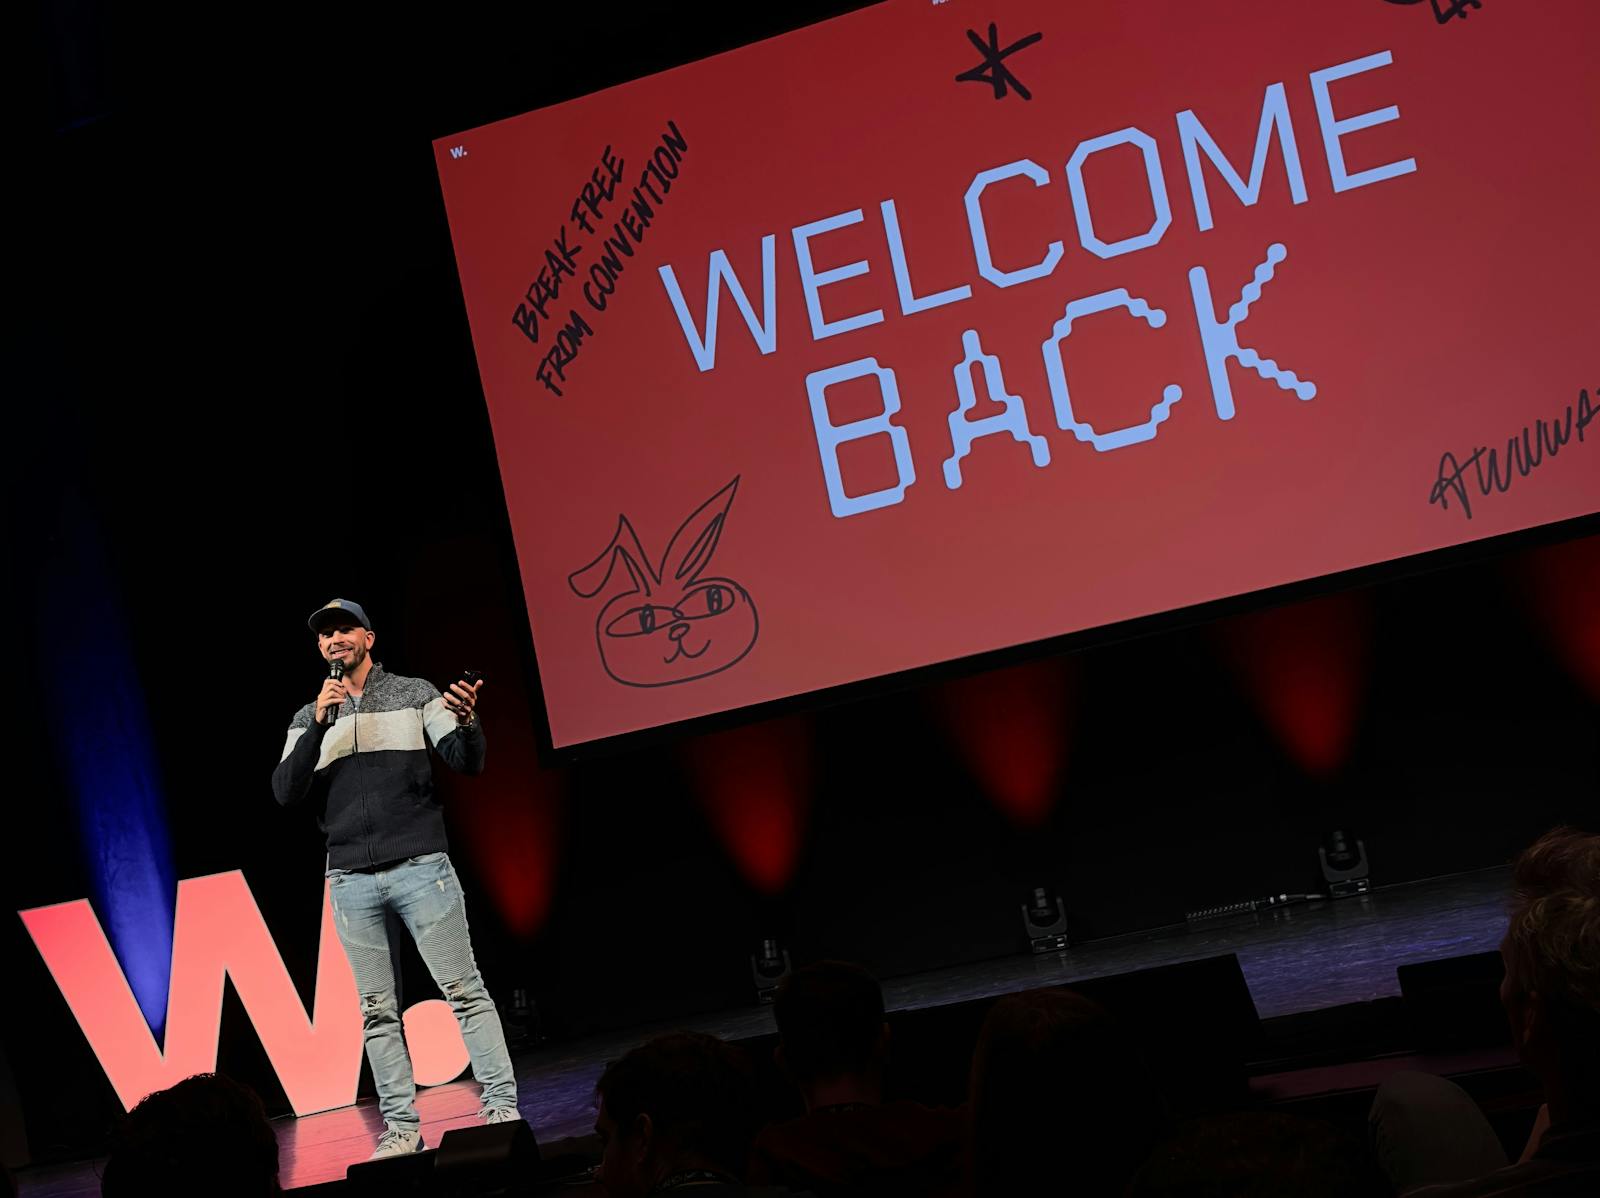 De afbeelding toont een spreker op een podium tijdens het Awwwards evenement. Achter de spreker staat een groot scherm met de tekst 'WELCOME BACK' prominent weergegeven in witte letters op een rode achtergrond. De sfeer is informeel en de spreker draagt c